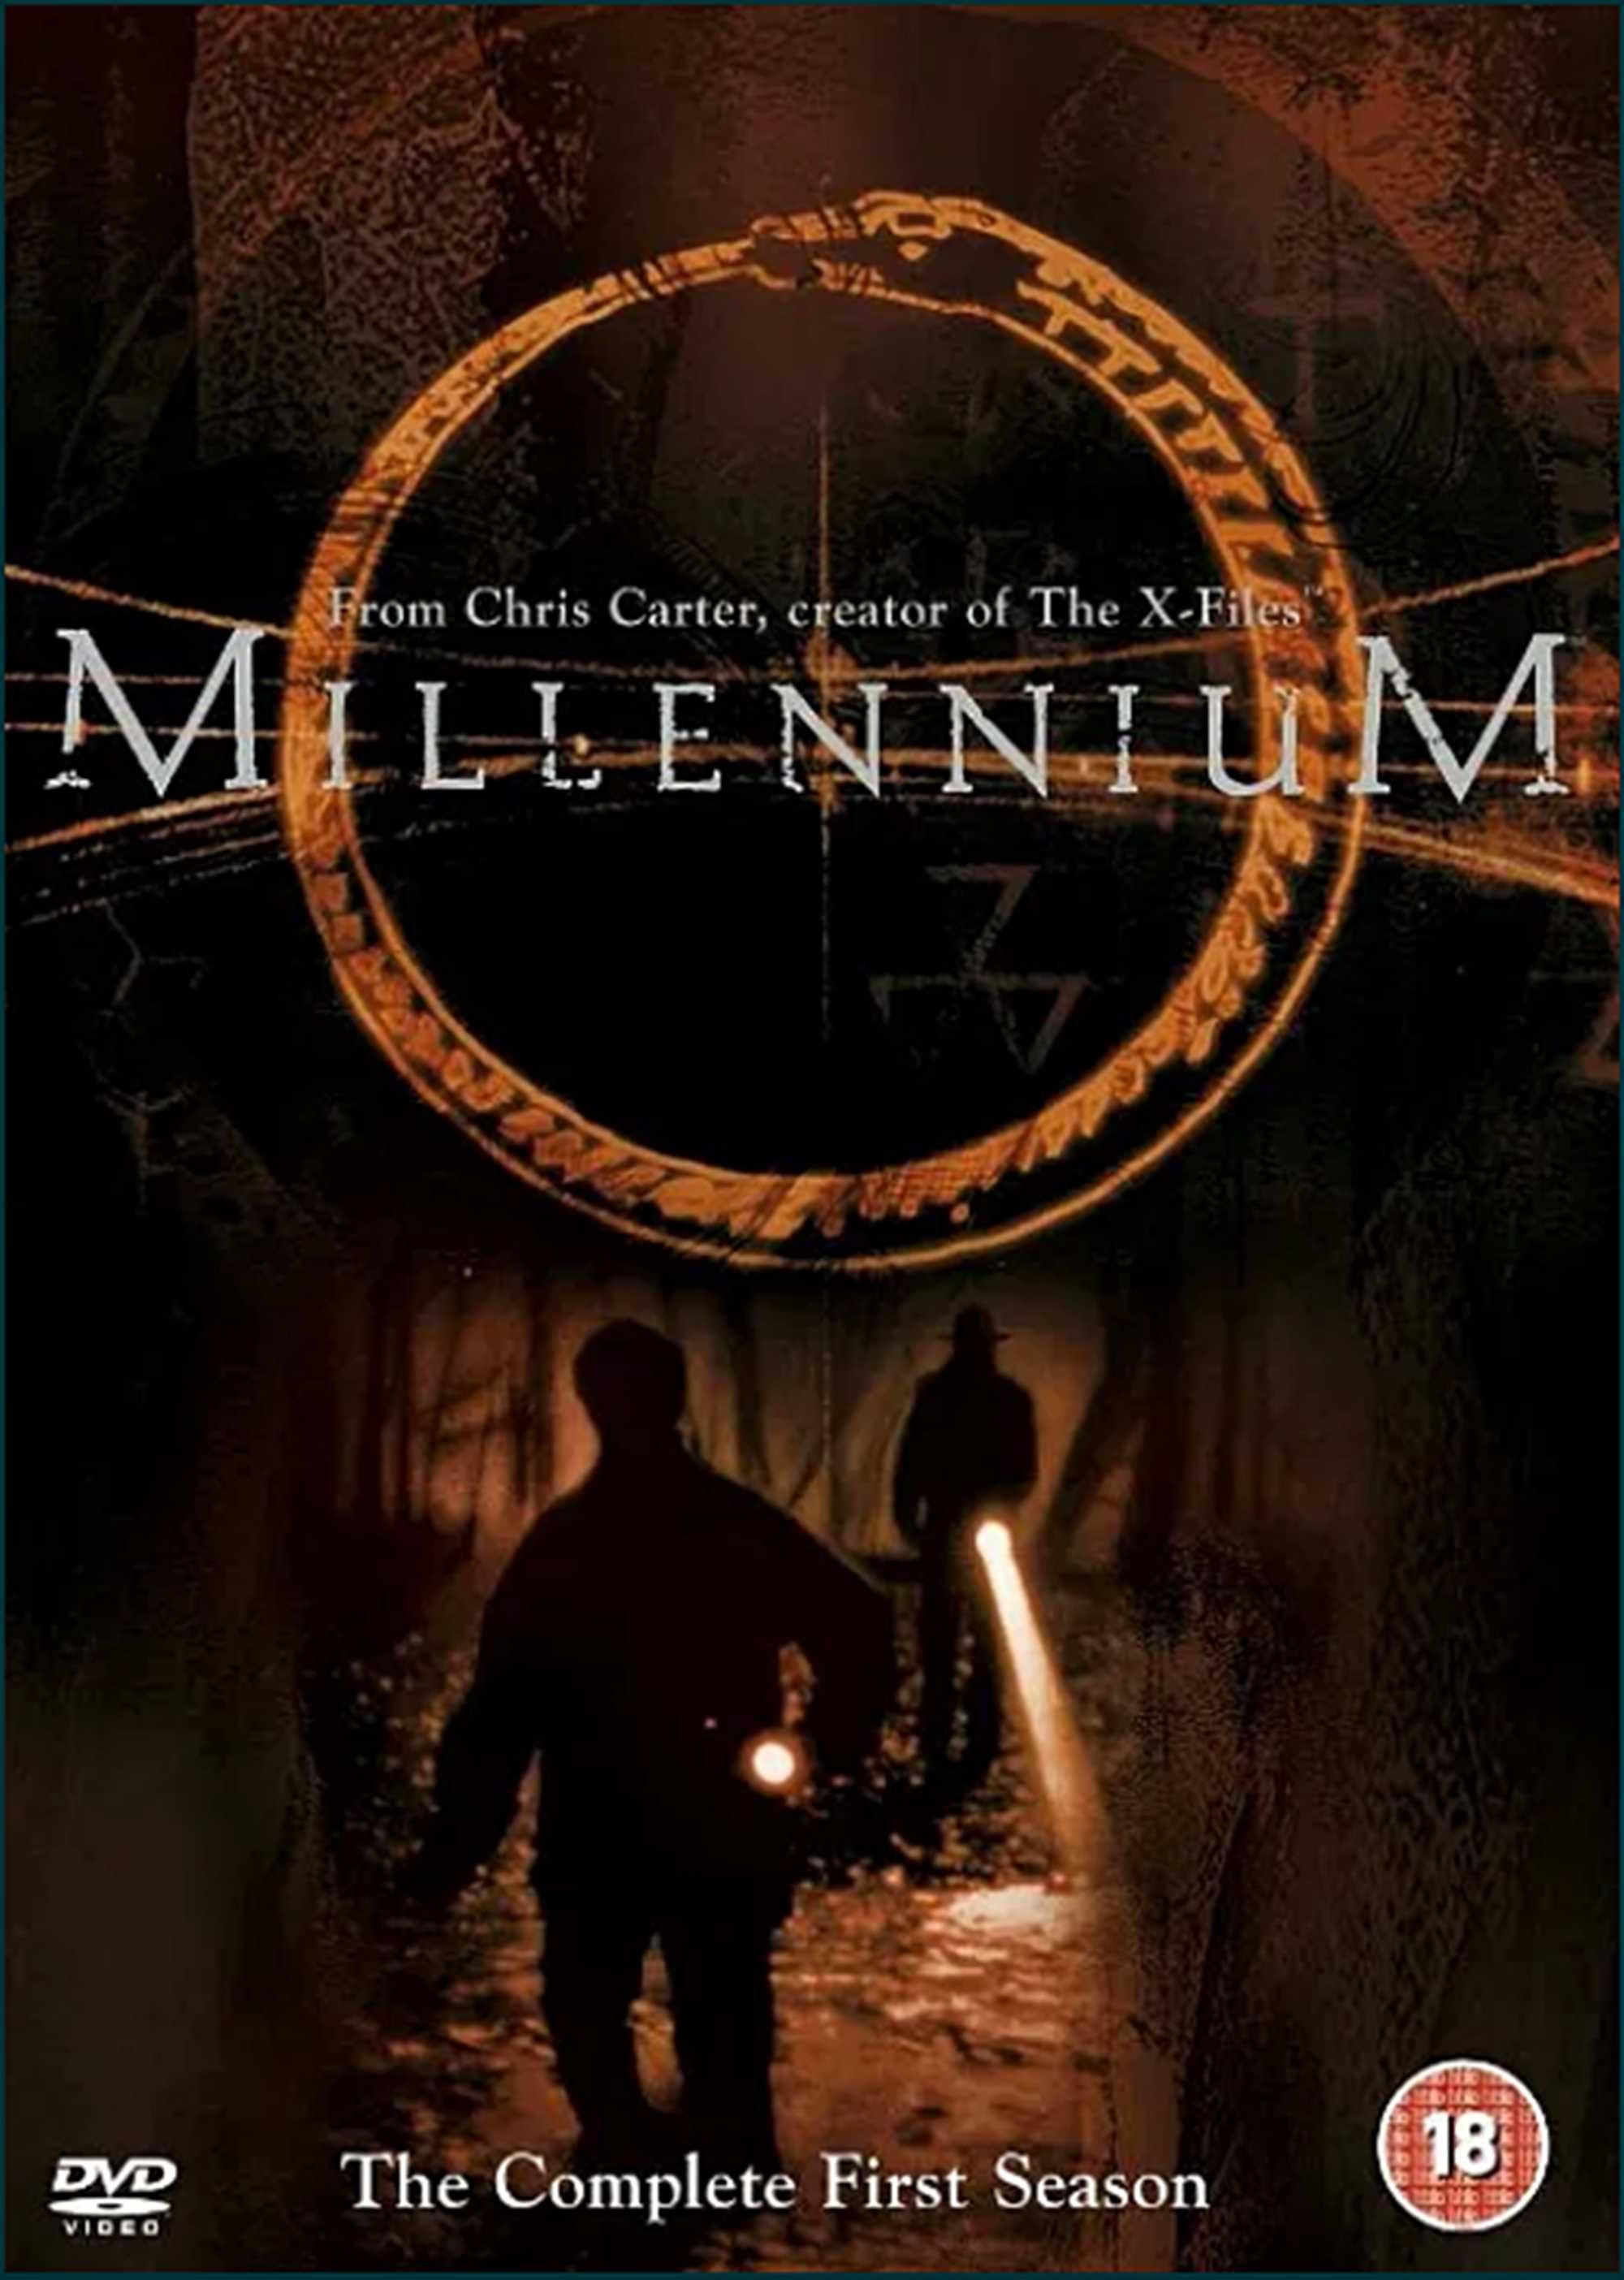 Сериал Тысячелетие Millennium Миллениум X-files фильм кино DVD диск